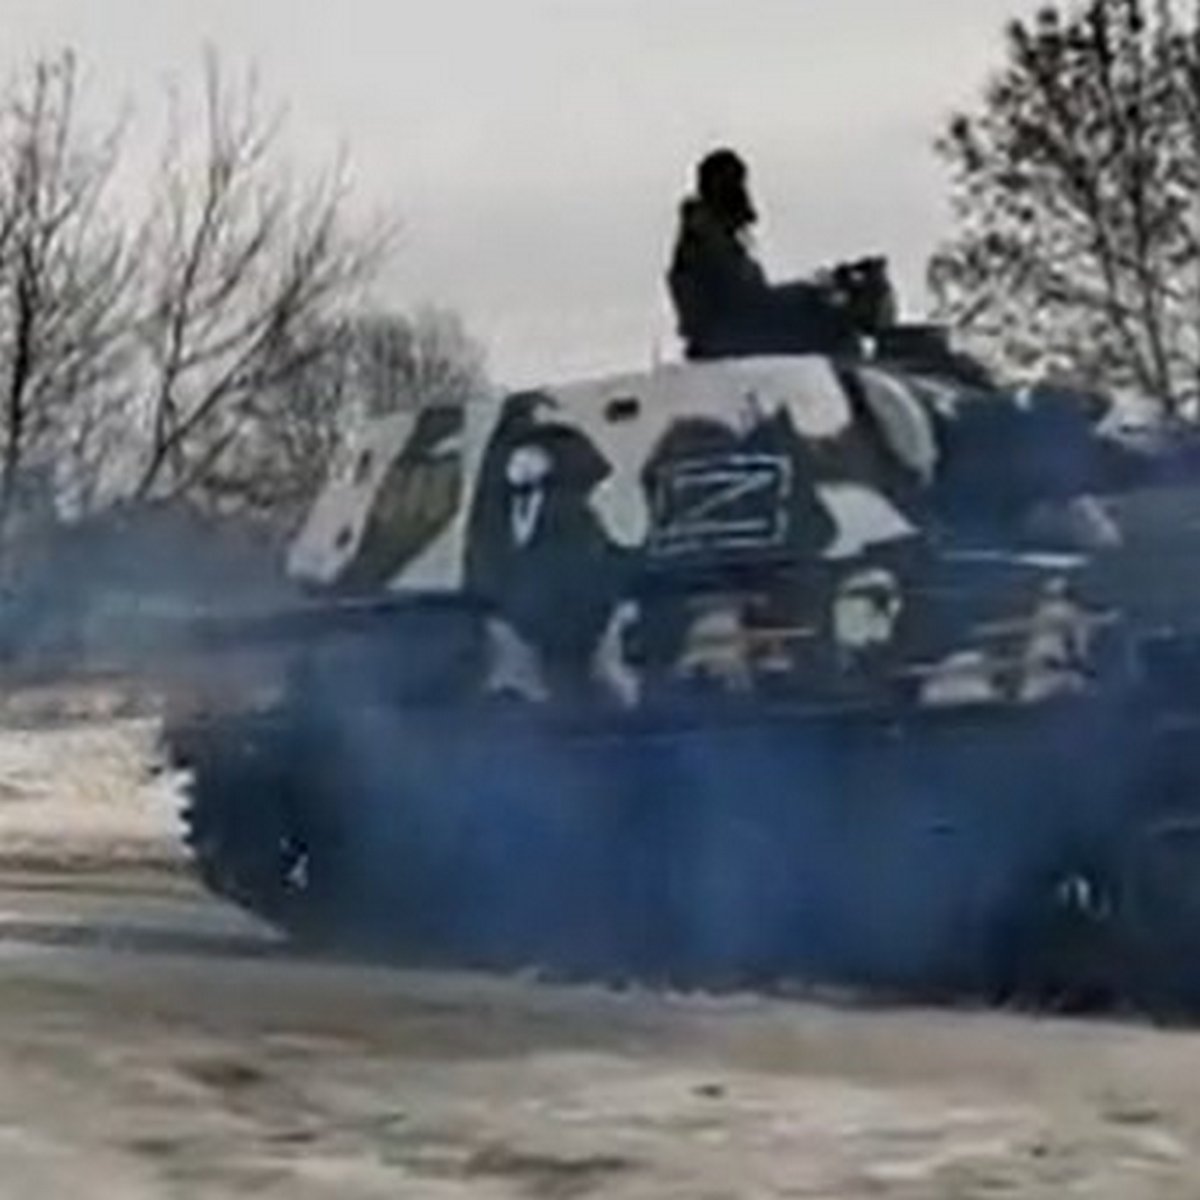 Un « Z » mystérieux apparaît sur des chars et des véhicules russes, laissant les experts perplexes